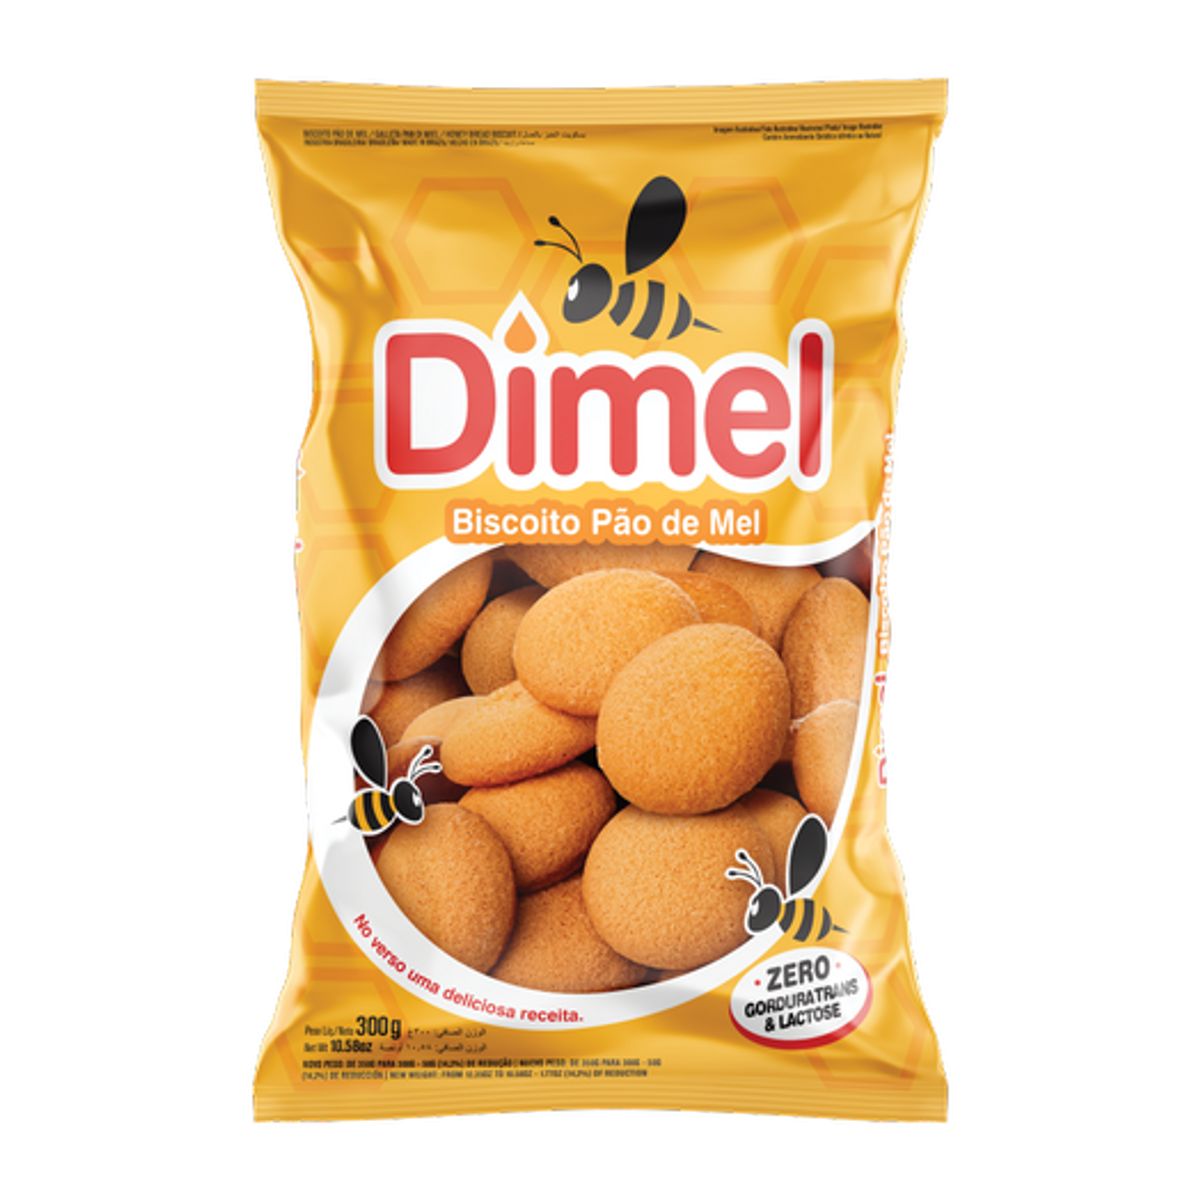 Biscoito Pão de Mel Dimel Pacote 350g